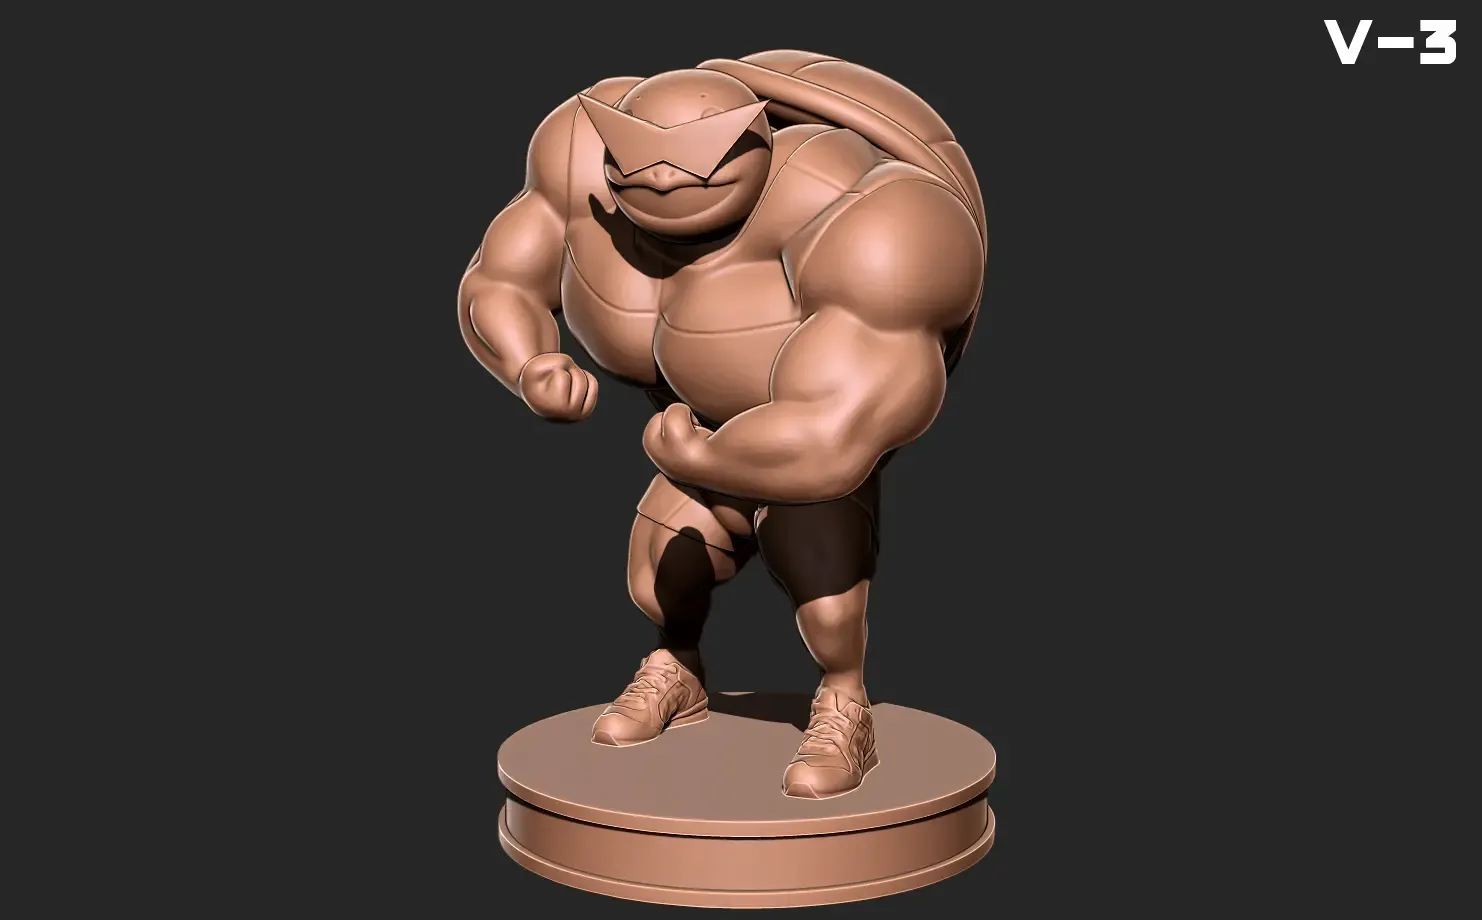 Squirtle bodybuilder V-3 - Pokemon 3D print model